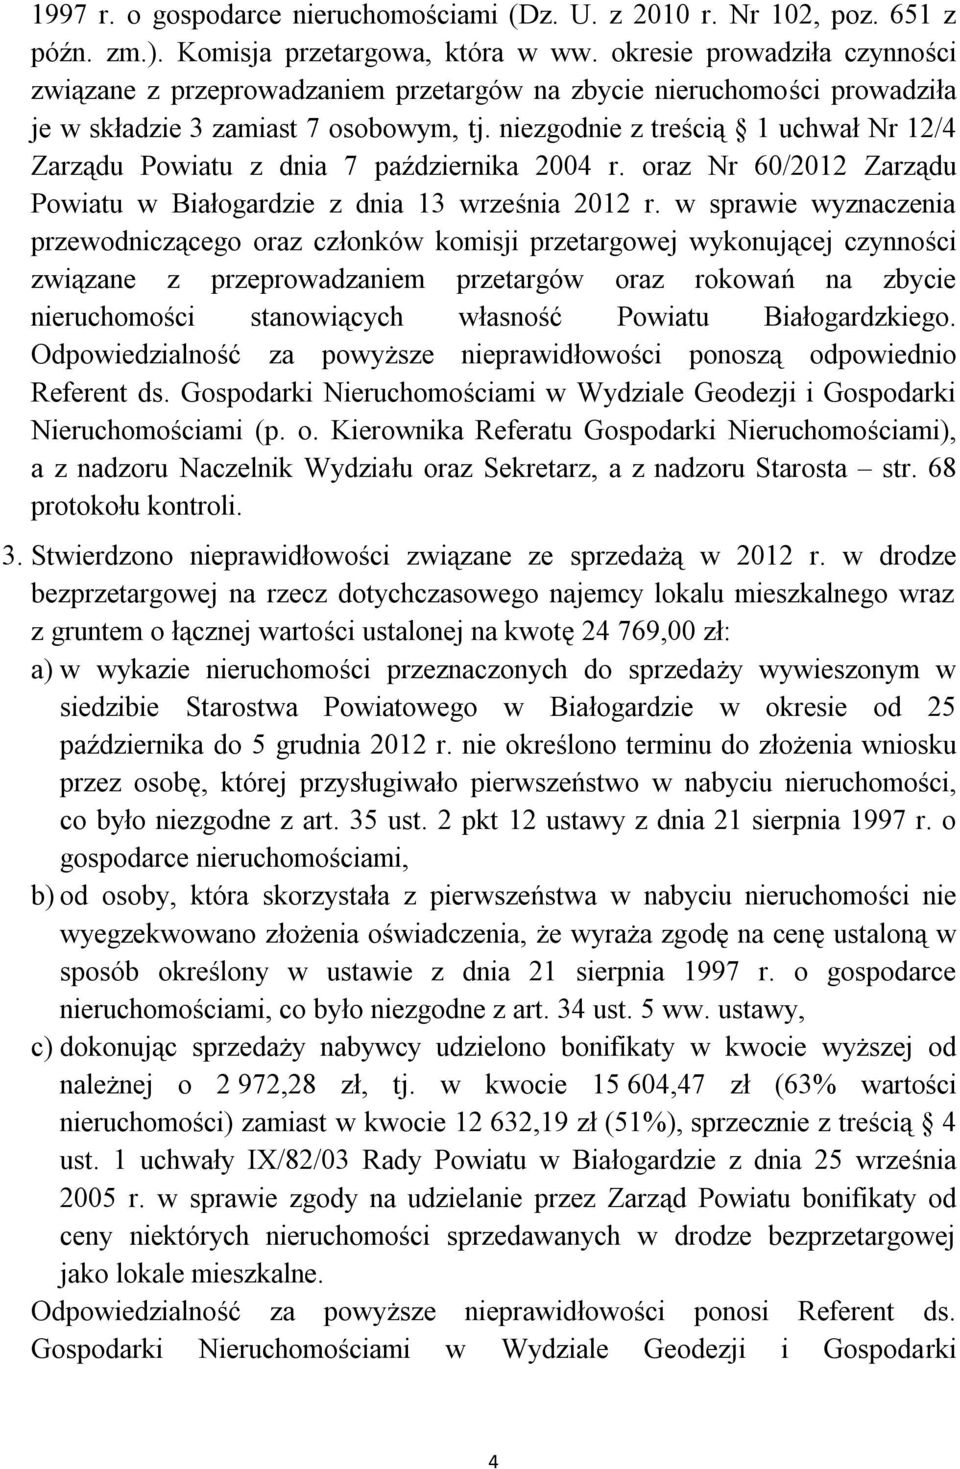 niezgodnie z treścią 1 uchwał Nr 12/4 Zarządu Powiatu z dnia 7 października 2004 r. oraz Nr 60/2012 Zarządu Powiatu w Białogardzie z dnia 13 września 2012 r.